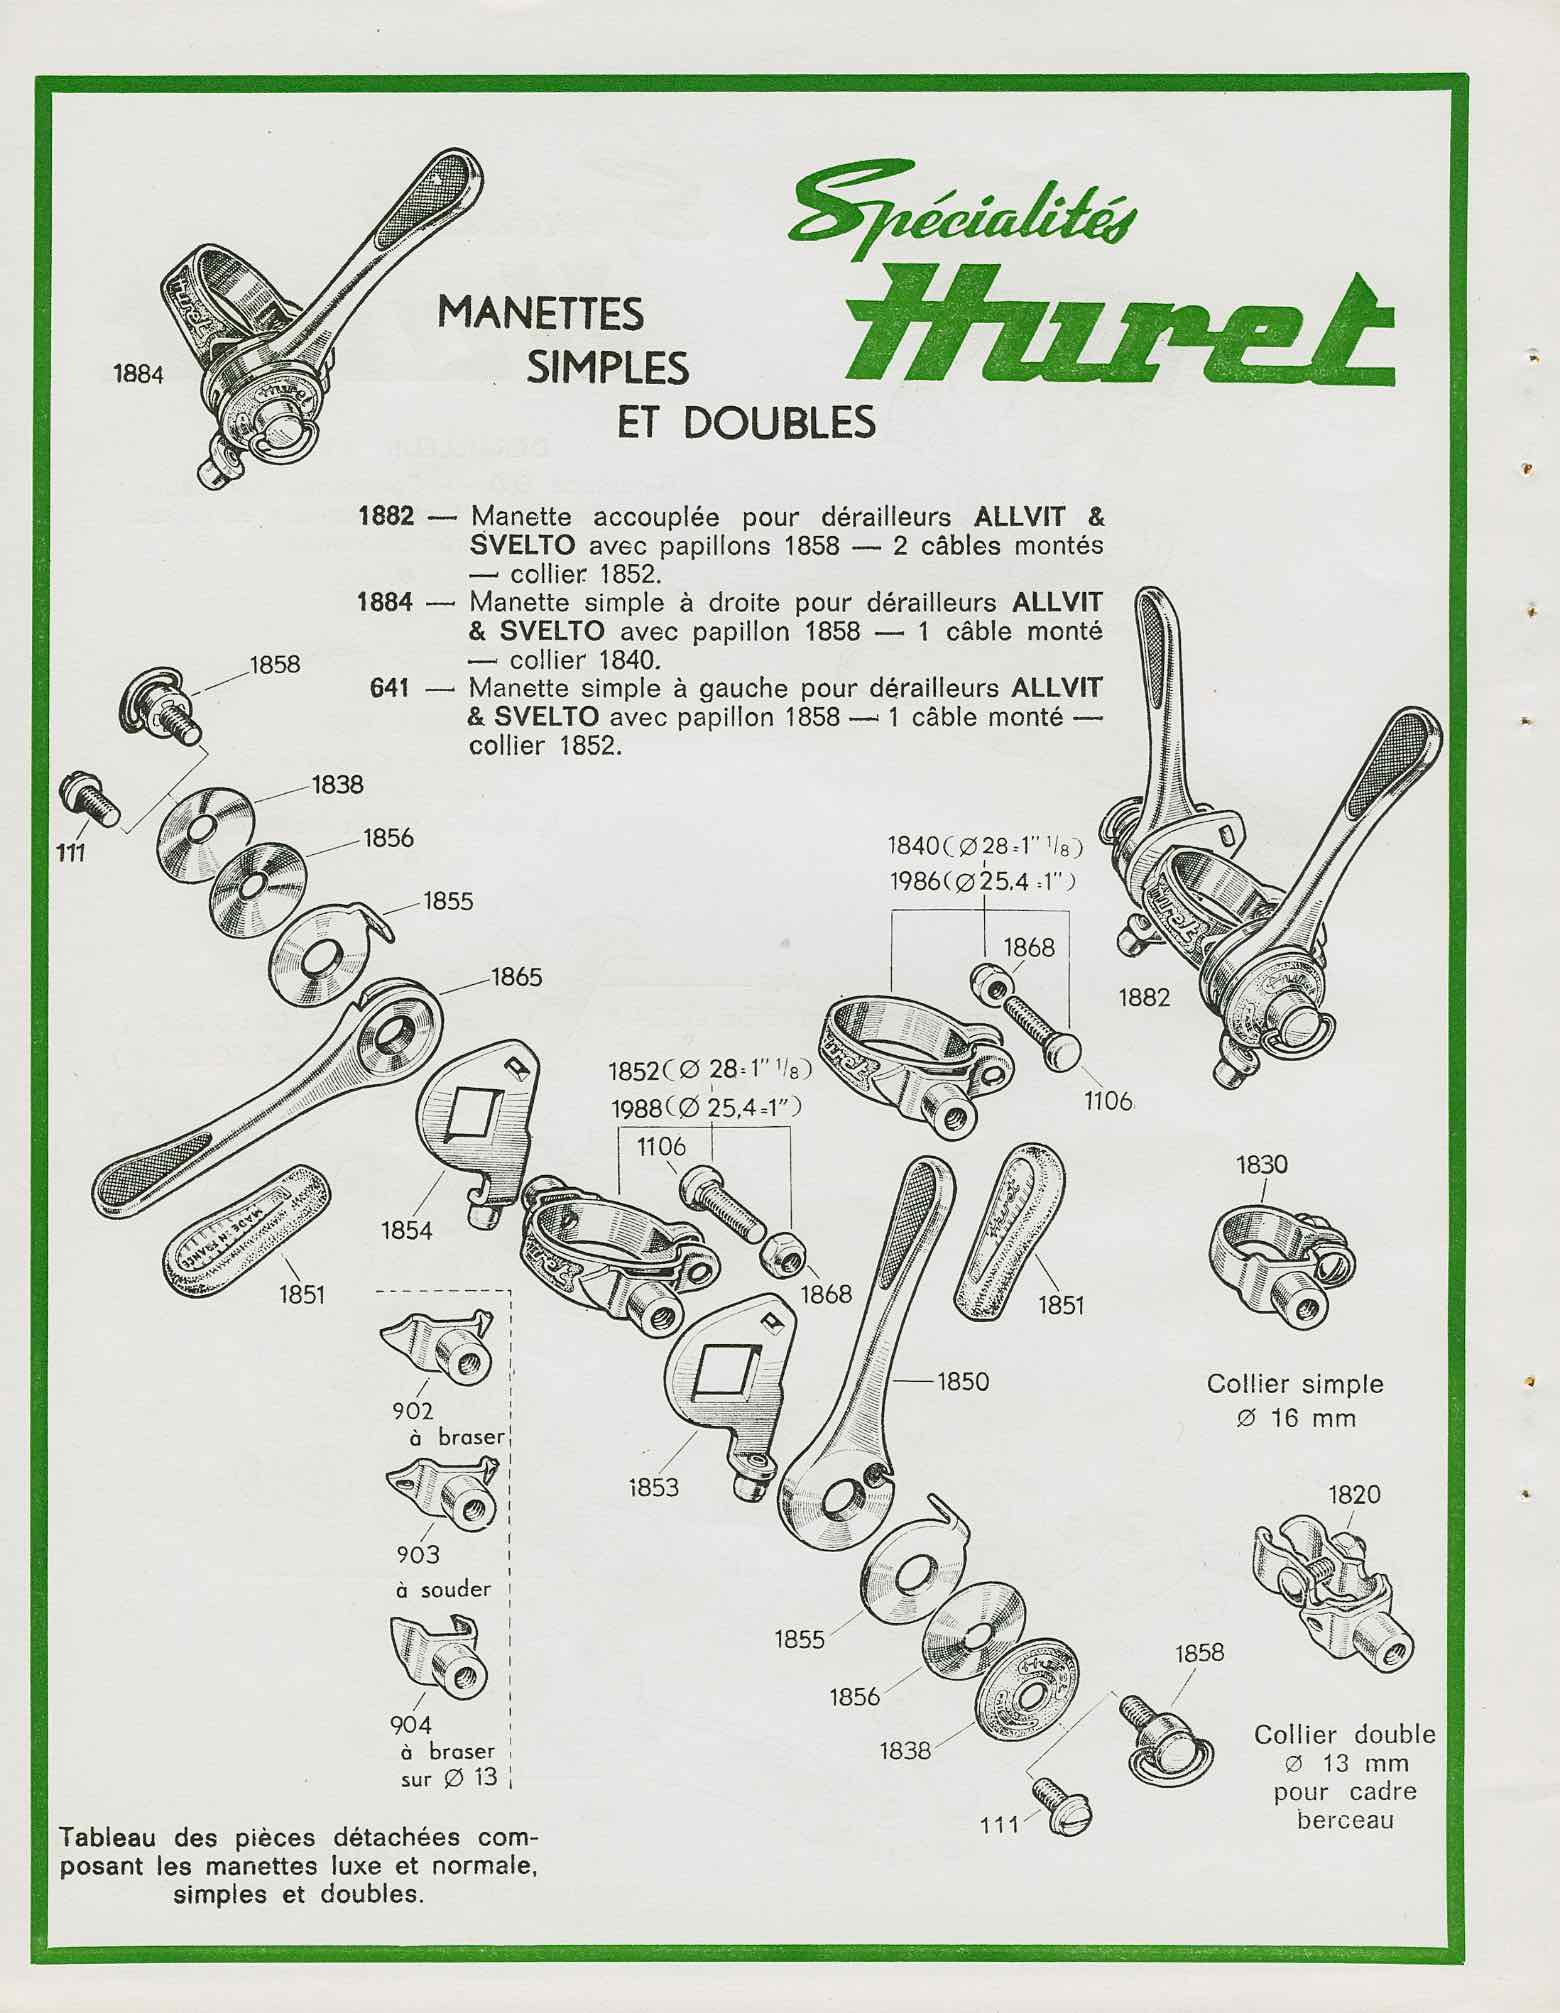 Huret Accessoires de Haut Qualite - 1968 scan 8 main image